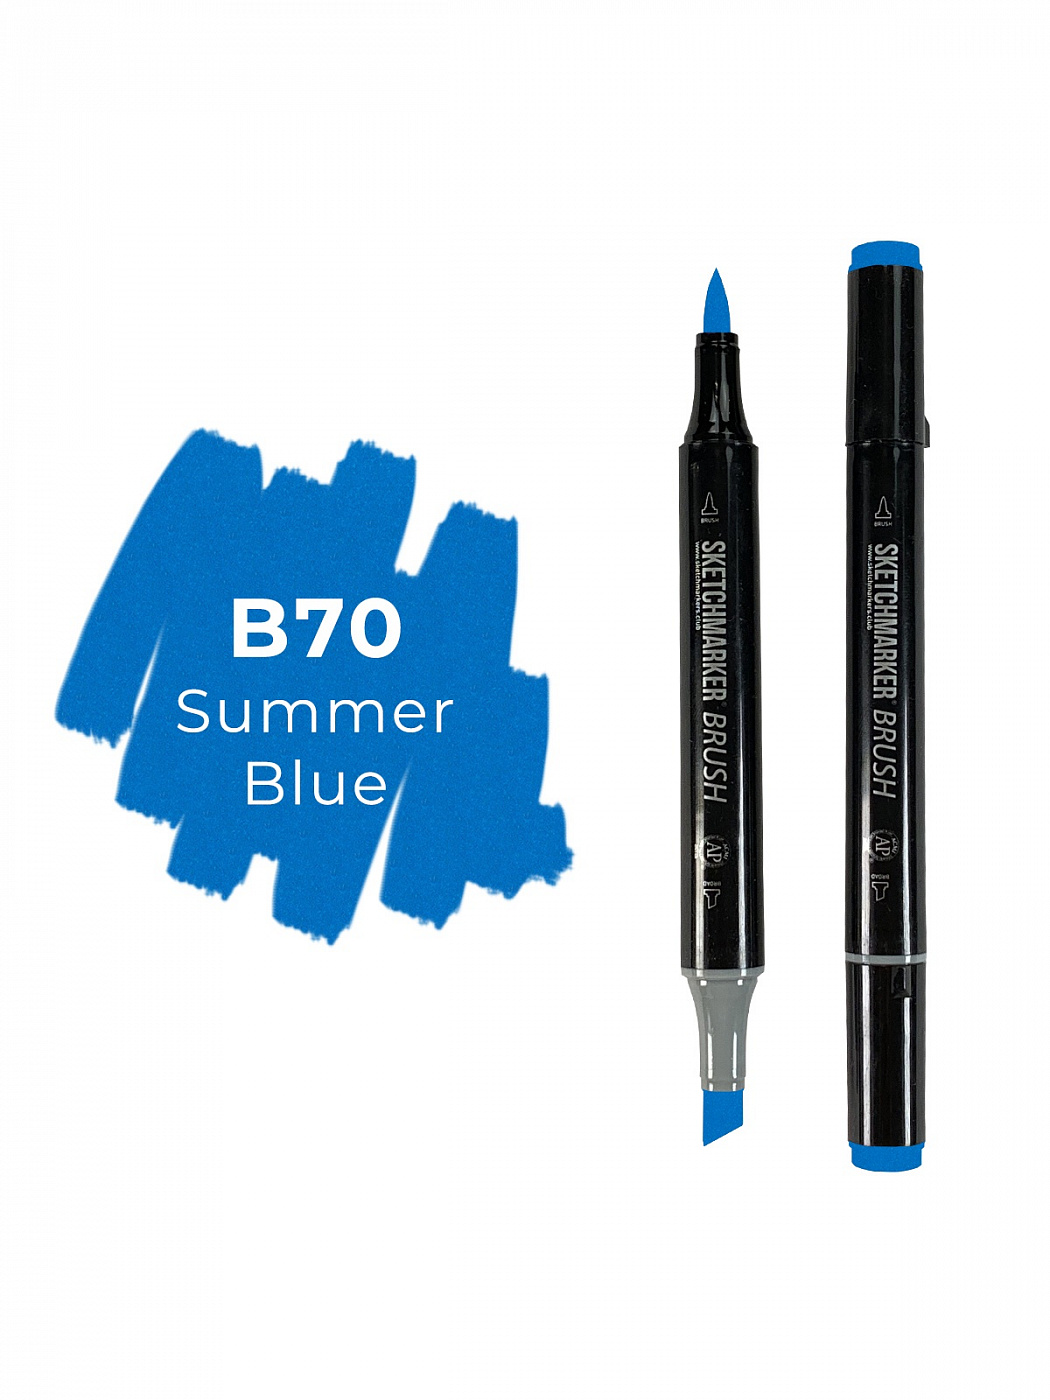 Маркер двухсторонний на спиртовой основе Sketchmarker Brush Цвет Летний синий маркер спиртовой promarker цв c429 синий холодный